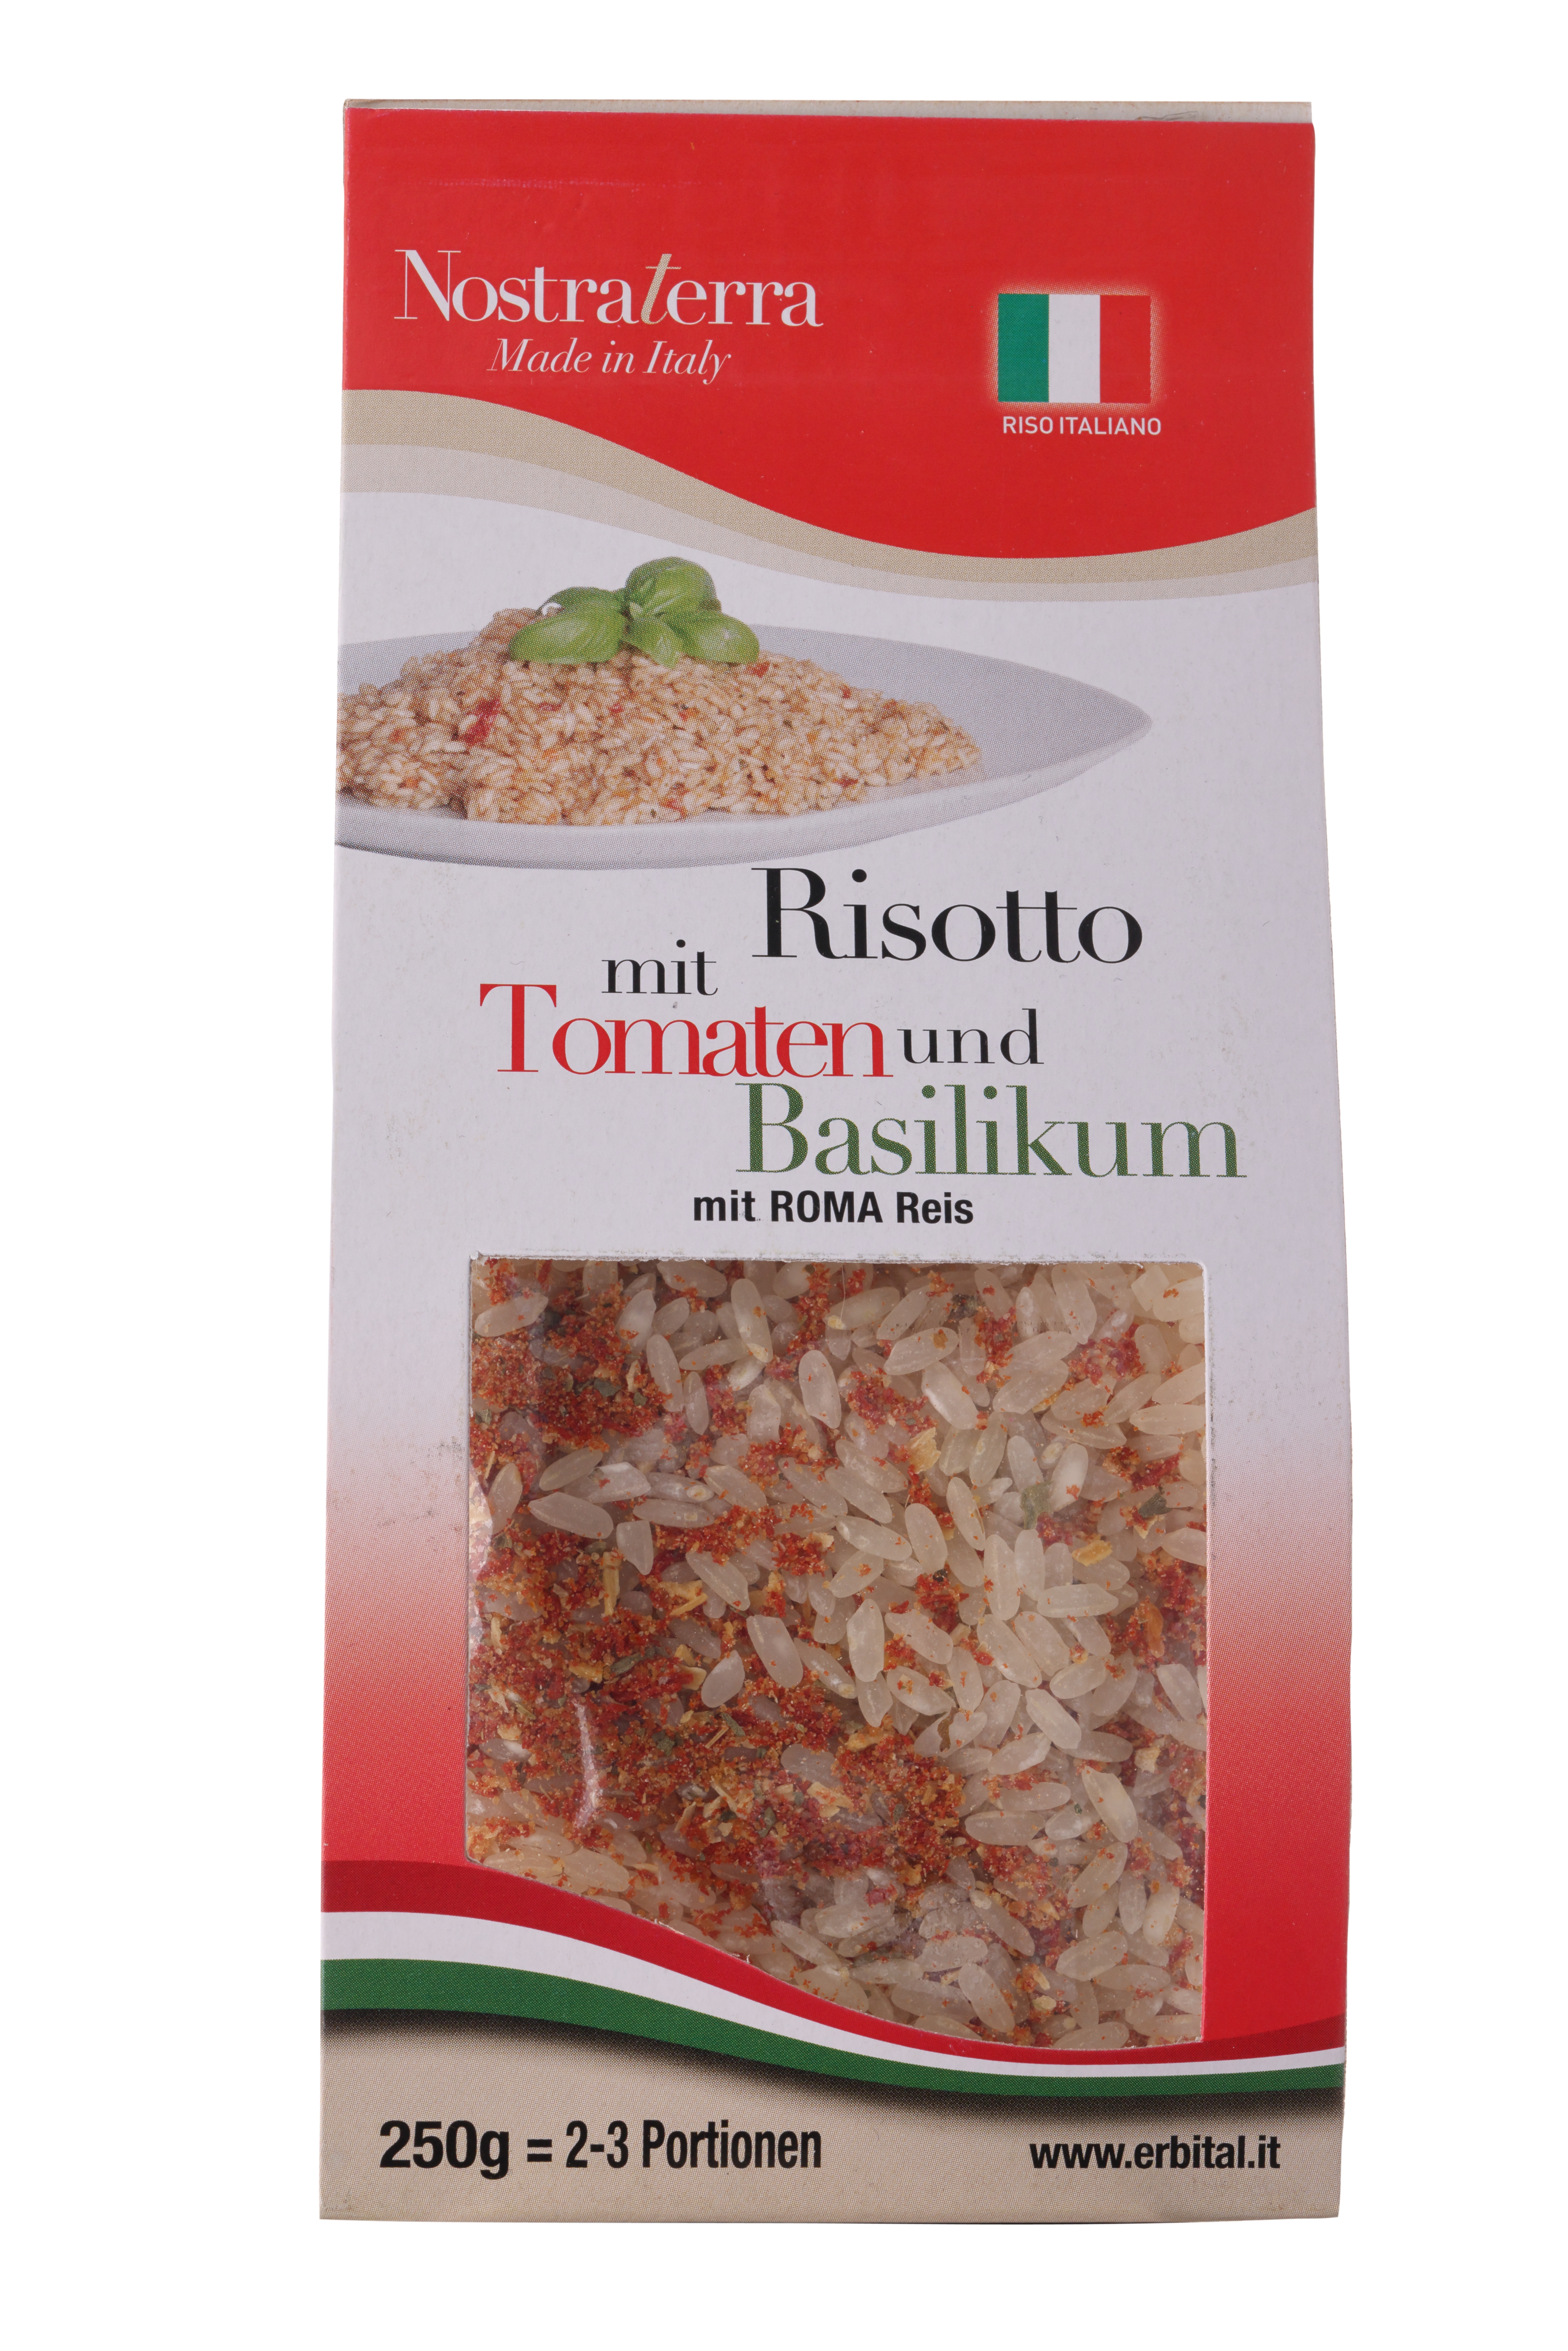 Nostra Terra, Risotto mit Tomaten und Basilikum, 250g